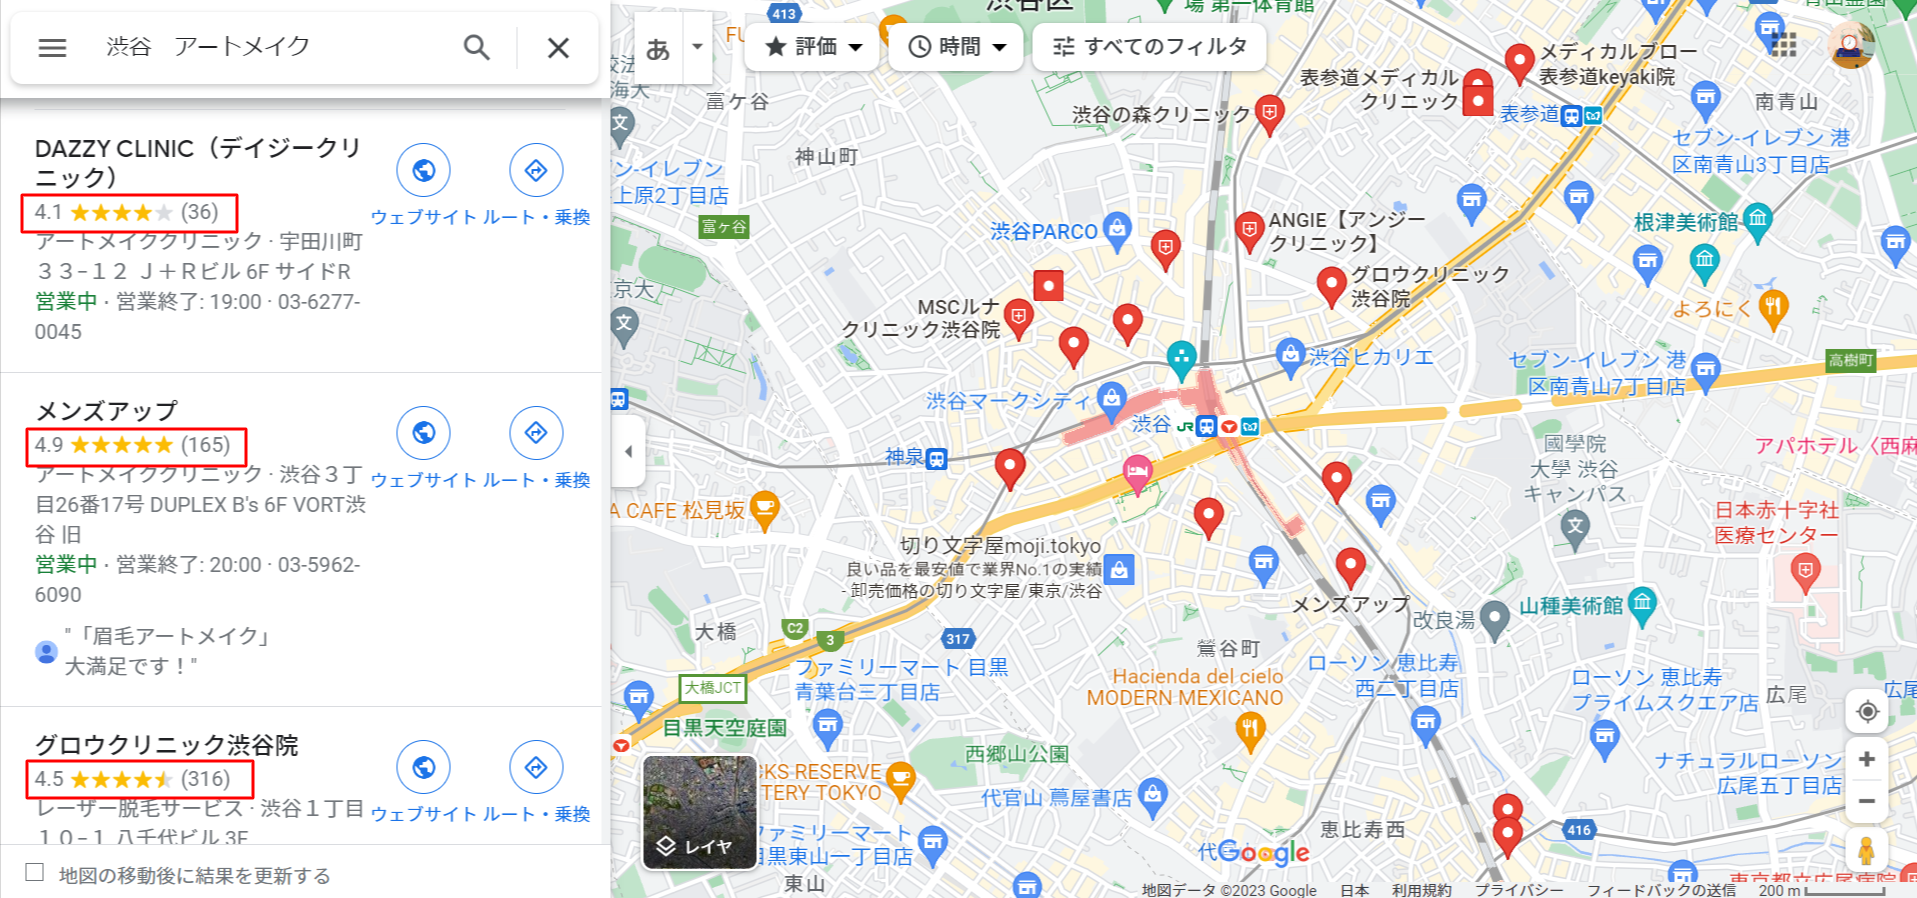 渋谷-アートメイク-Google-マップ